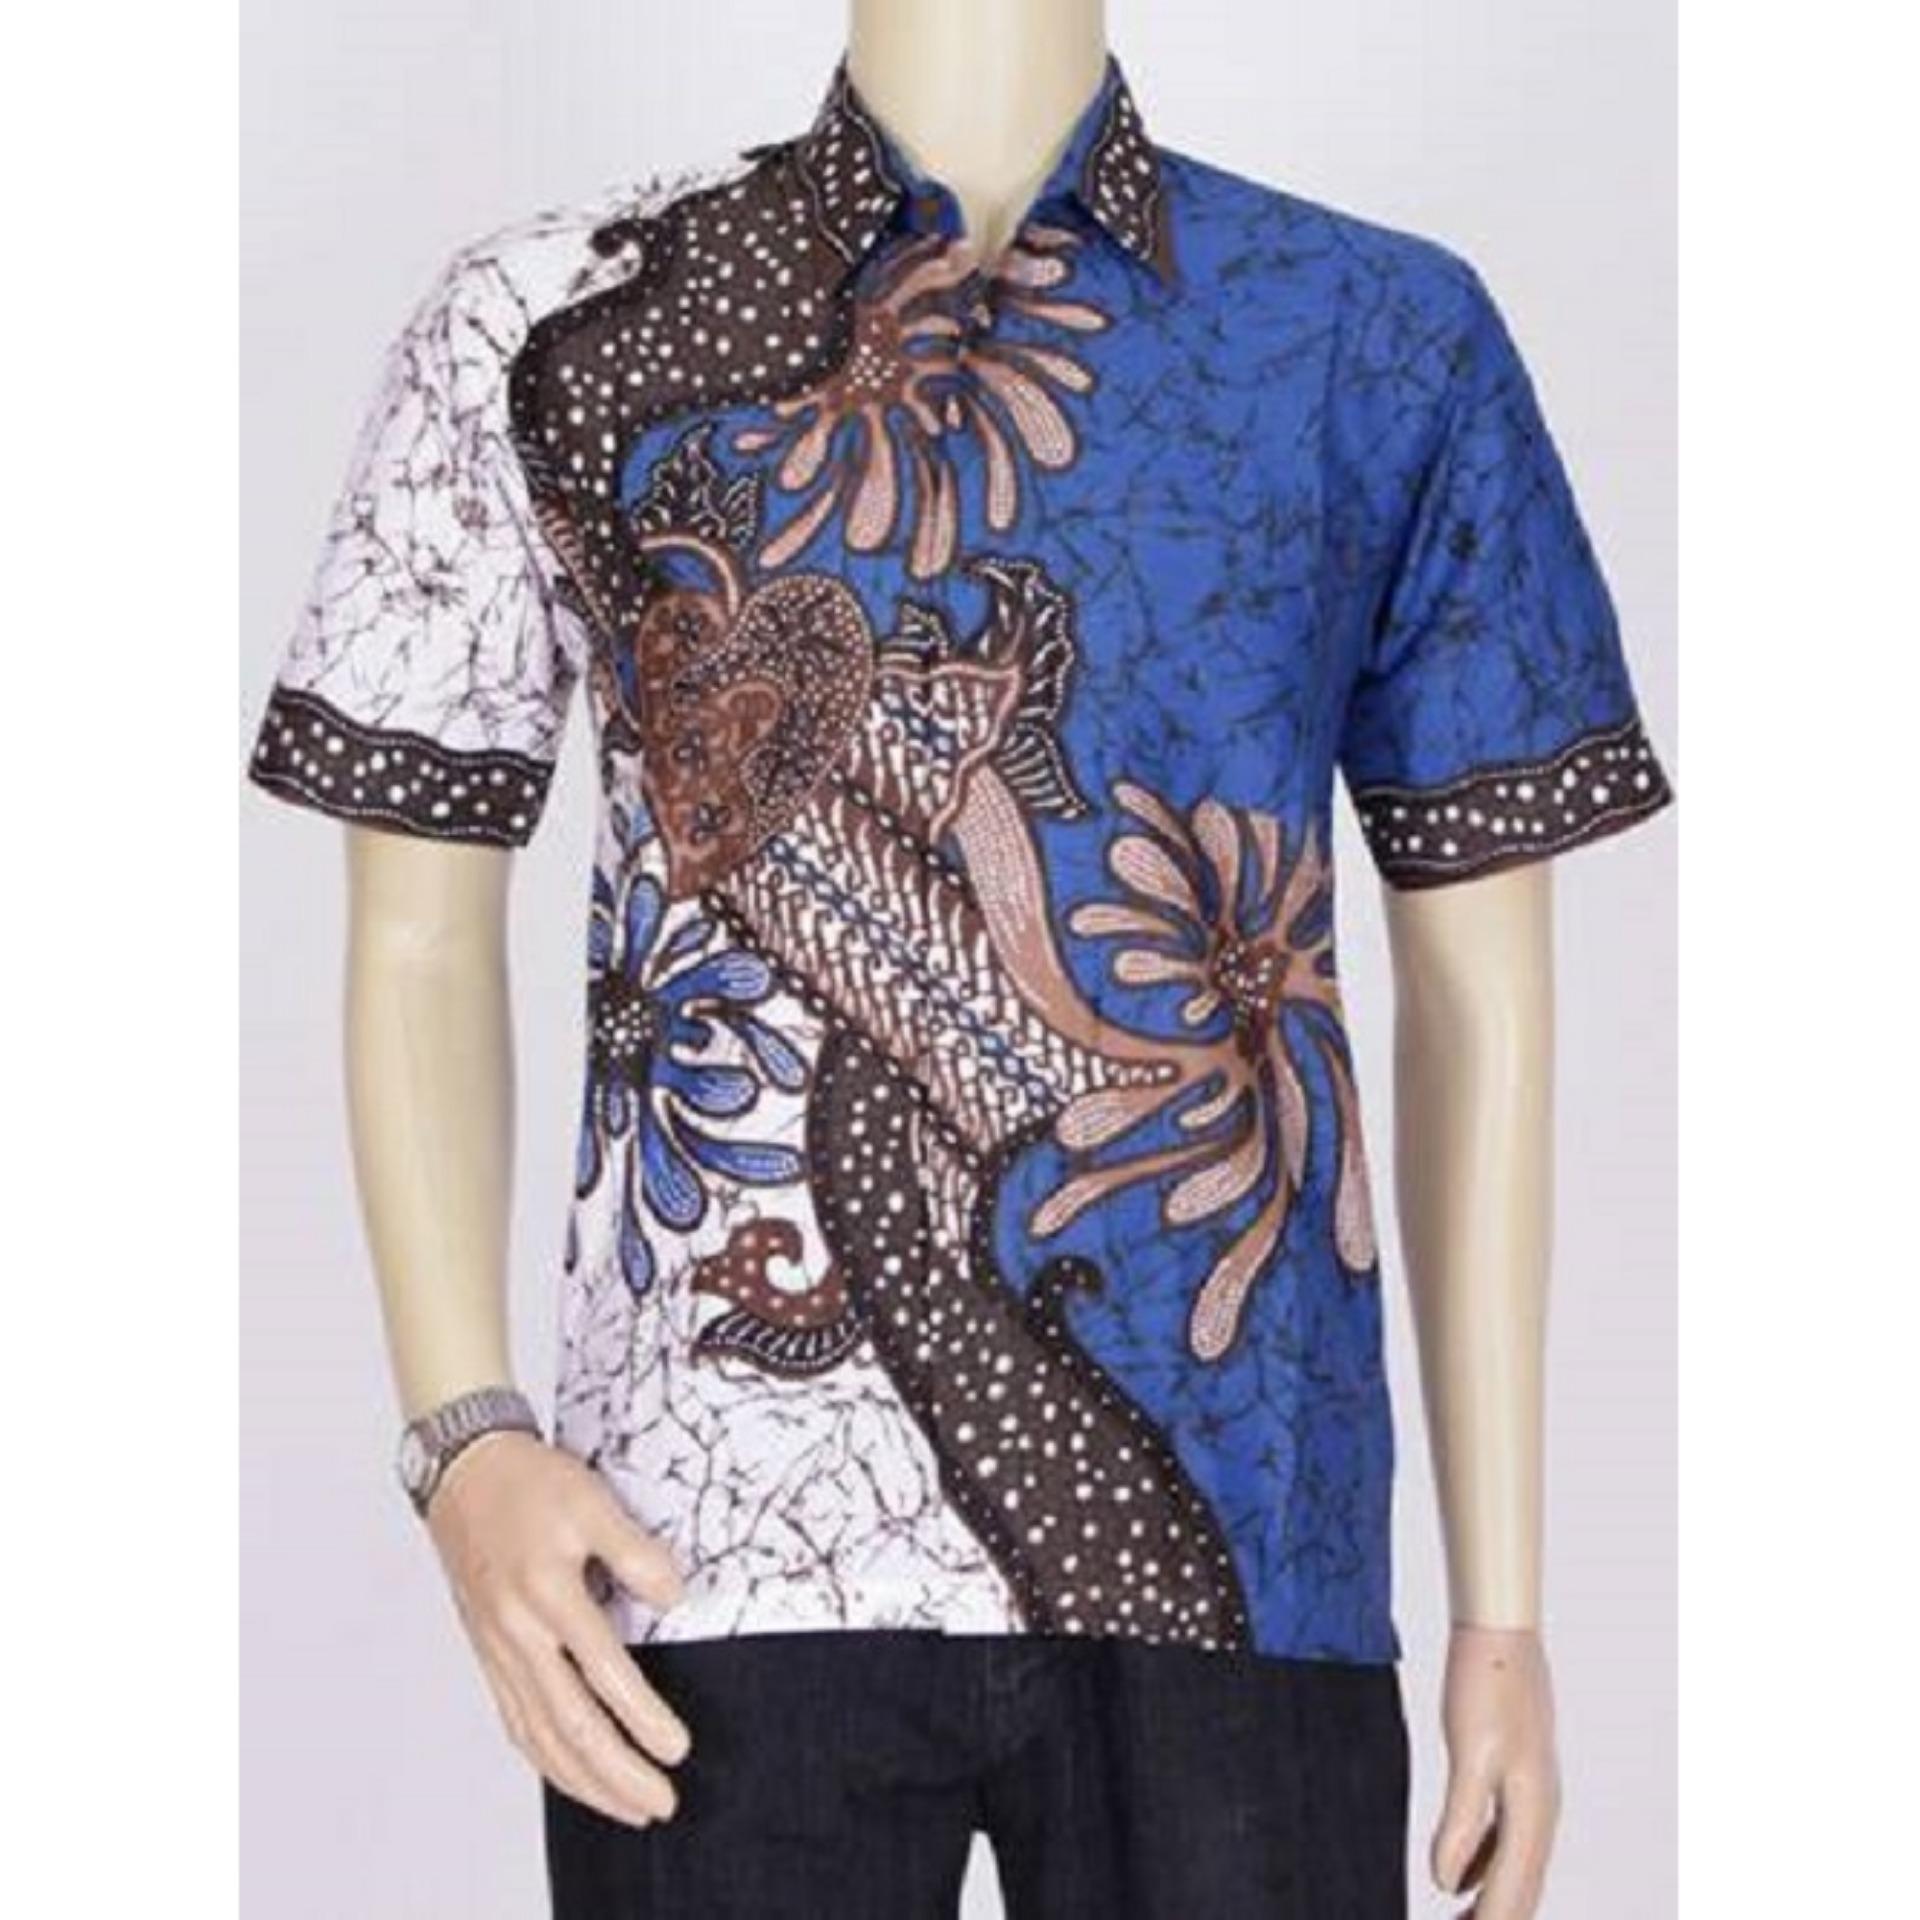 BELI Baju  Kemeja Batik  Modern Pria Khas Pekalongan Biru  